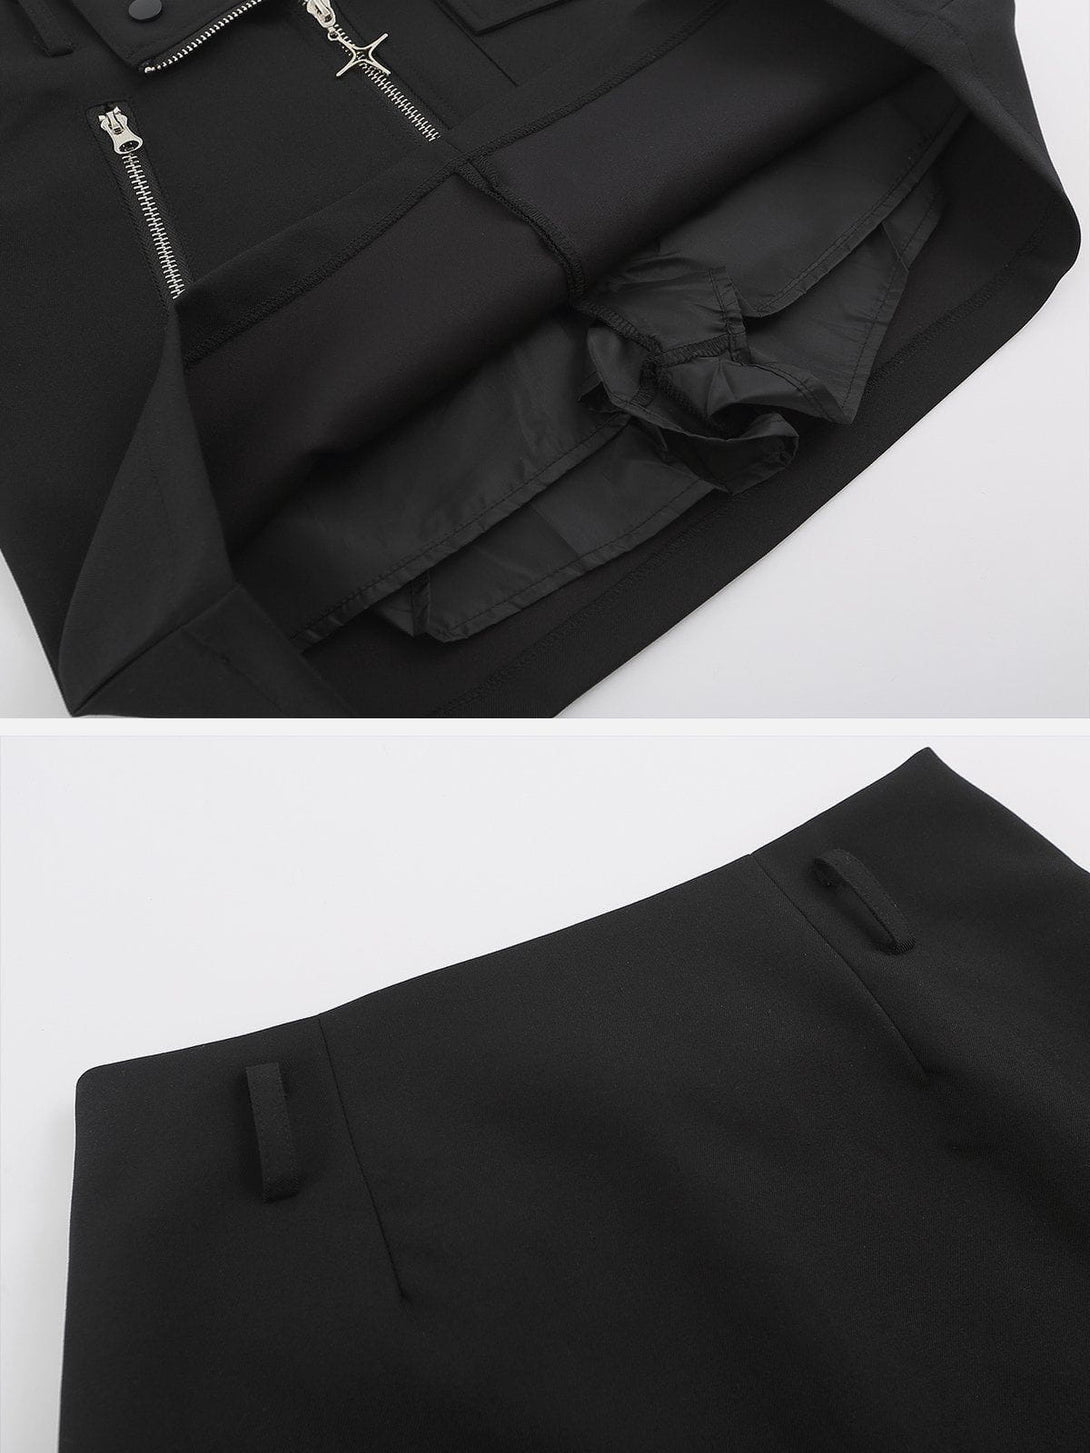 AlanBalen® Vintage Navel Crop Zip Suit AlanBalen